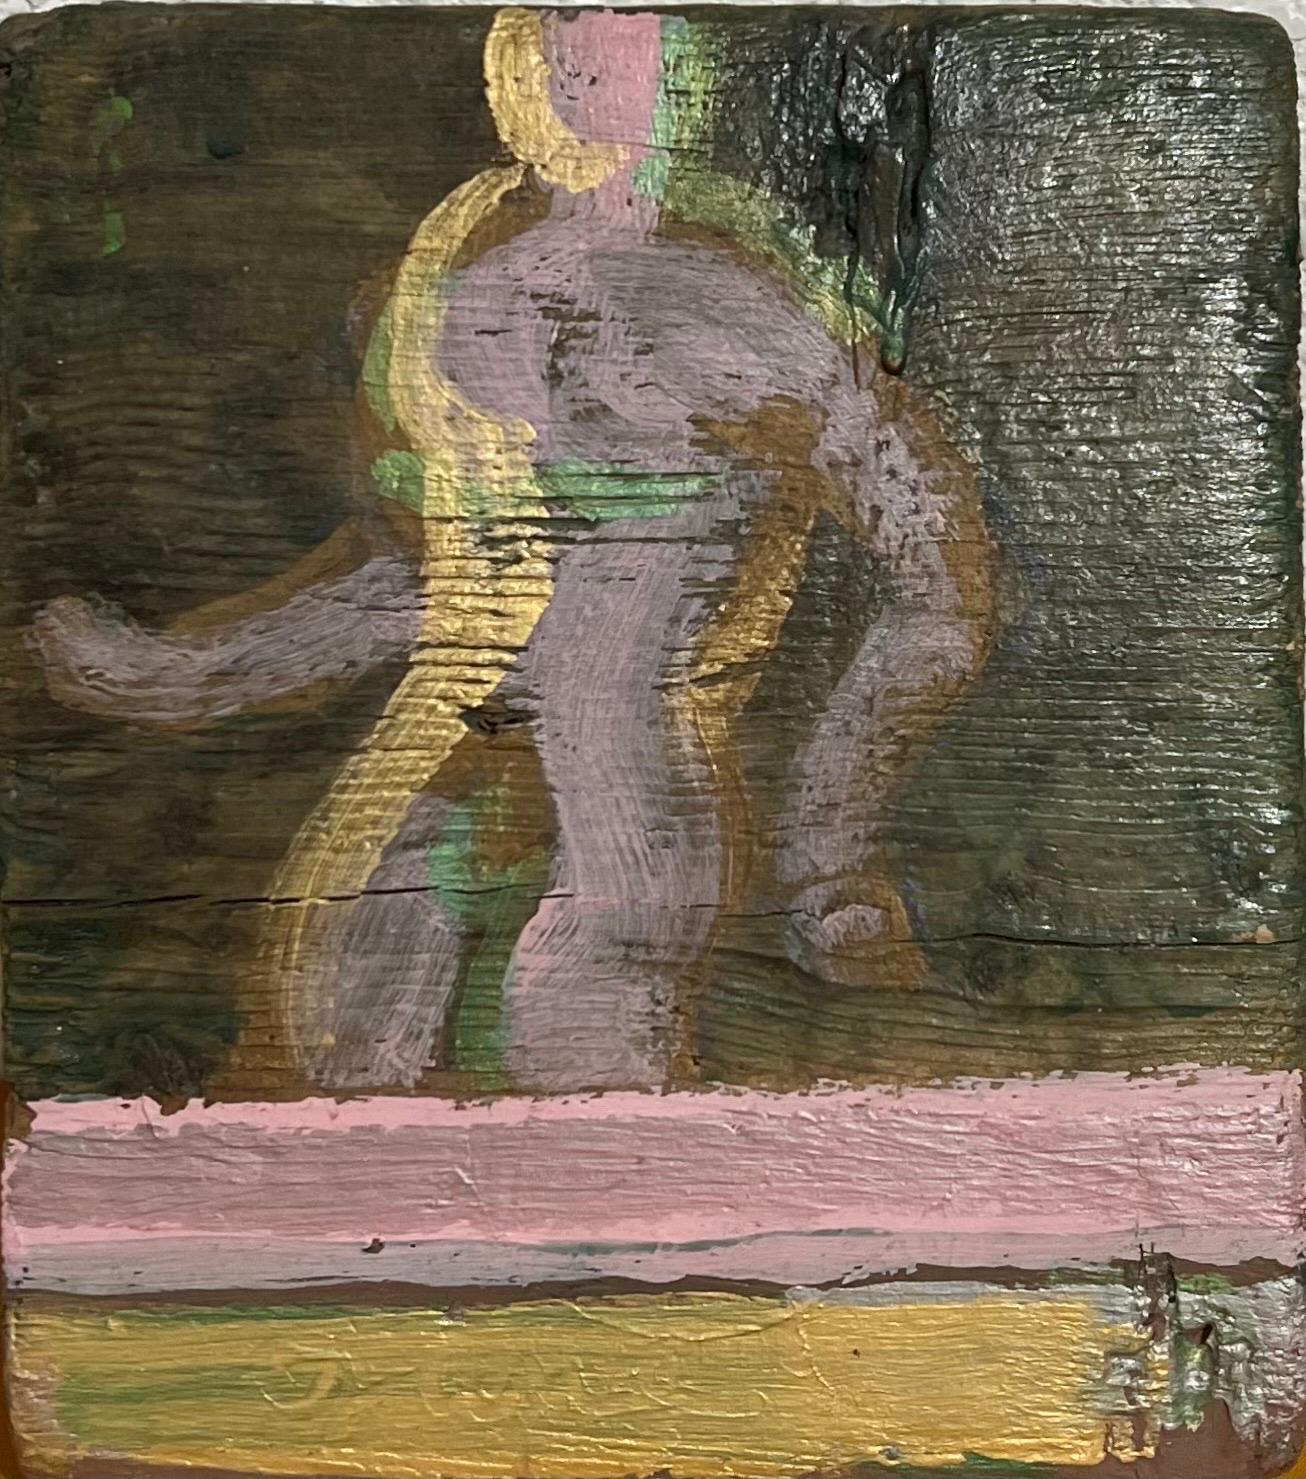 Edward Avedisian ( 1936-2007 ) 
8 X 9
Ölfarbe auf Holzbrettchen mit goldener und violetter Figur
Dieser ist auf der Vorderseite nicht signiert. Es trägt auf der Rückseite seinen Namen.
Provenienz: Hudson, N.Y. Nachlass des bekannten Kunstsammlers